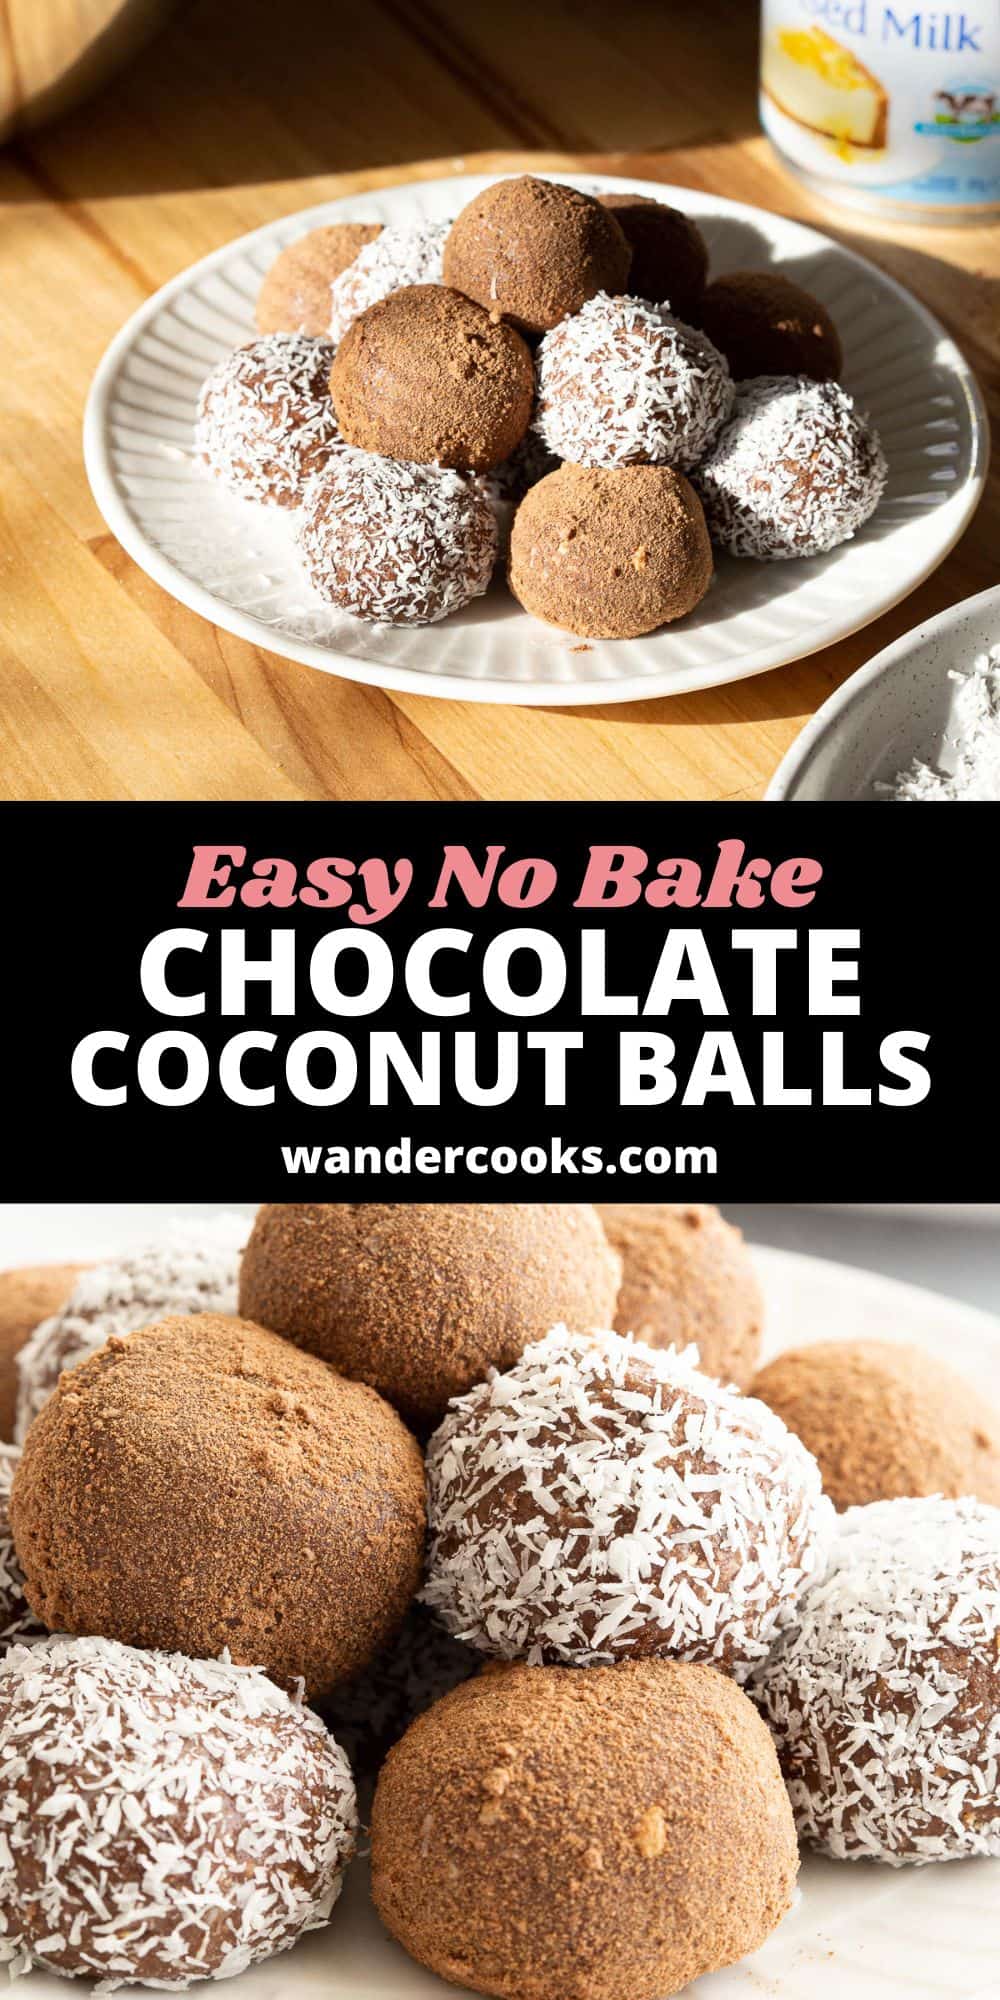 10 Minute Chocolate Coconut Balls - Rum Balls